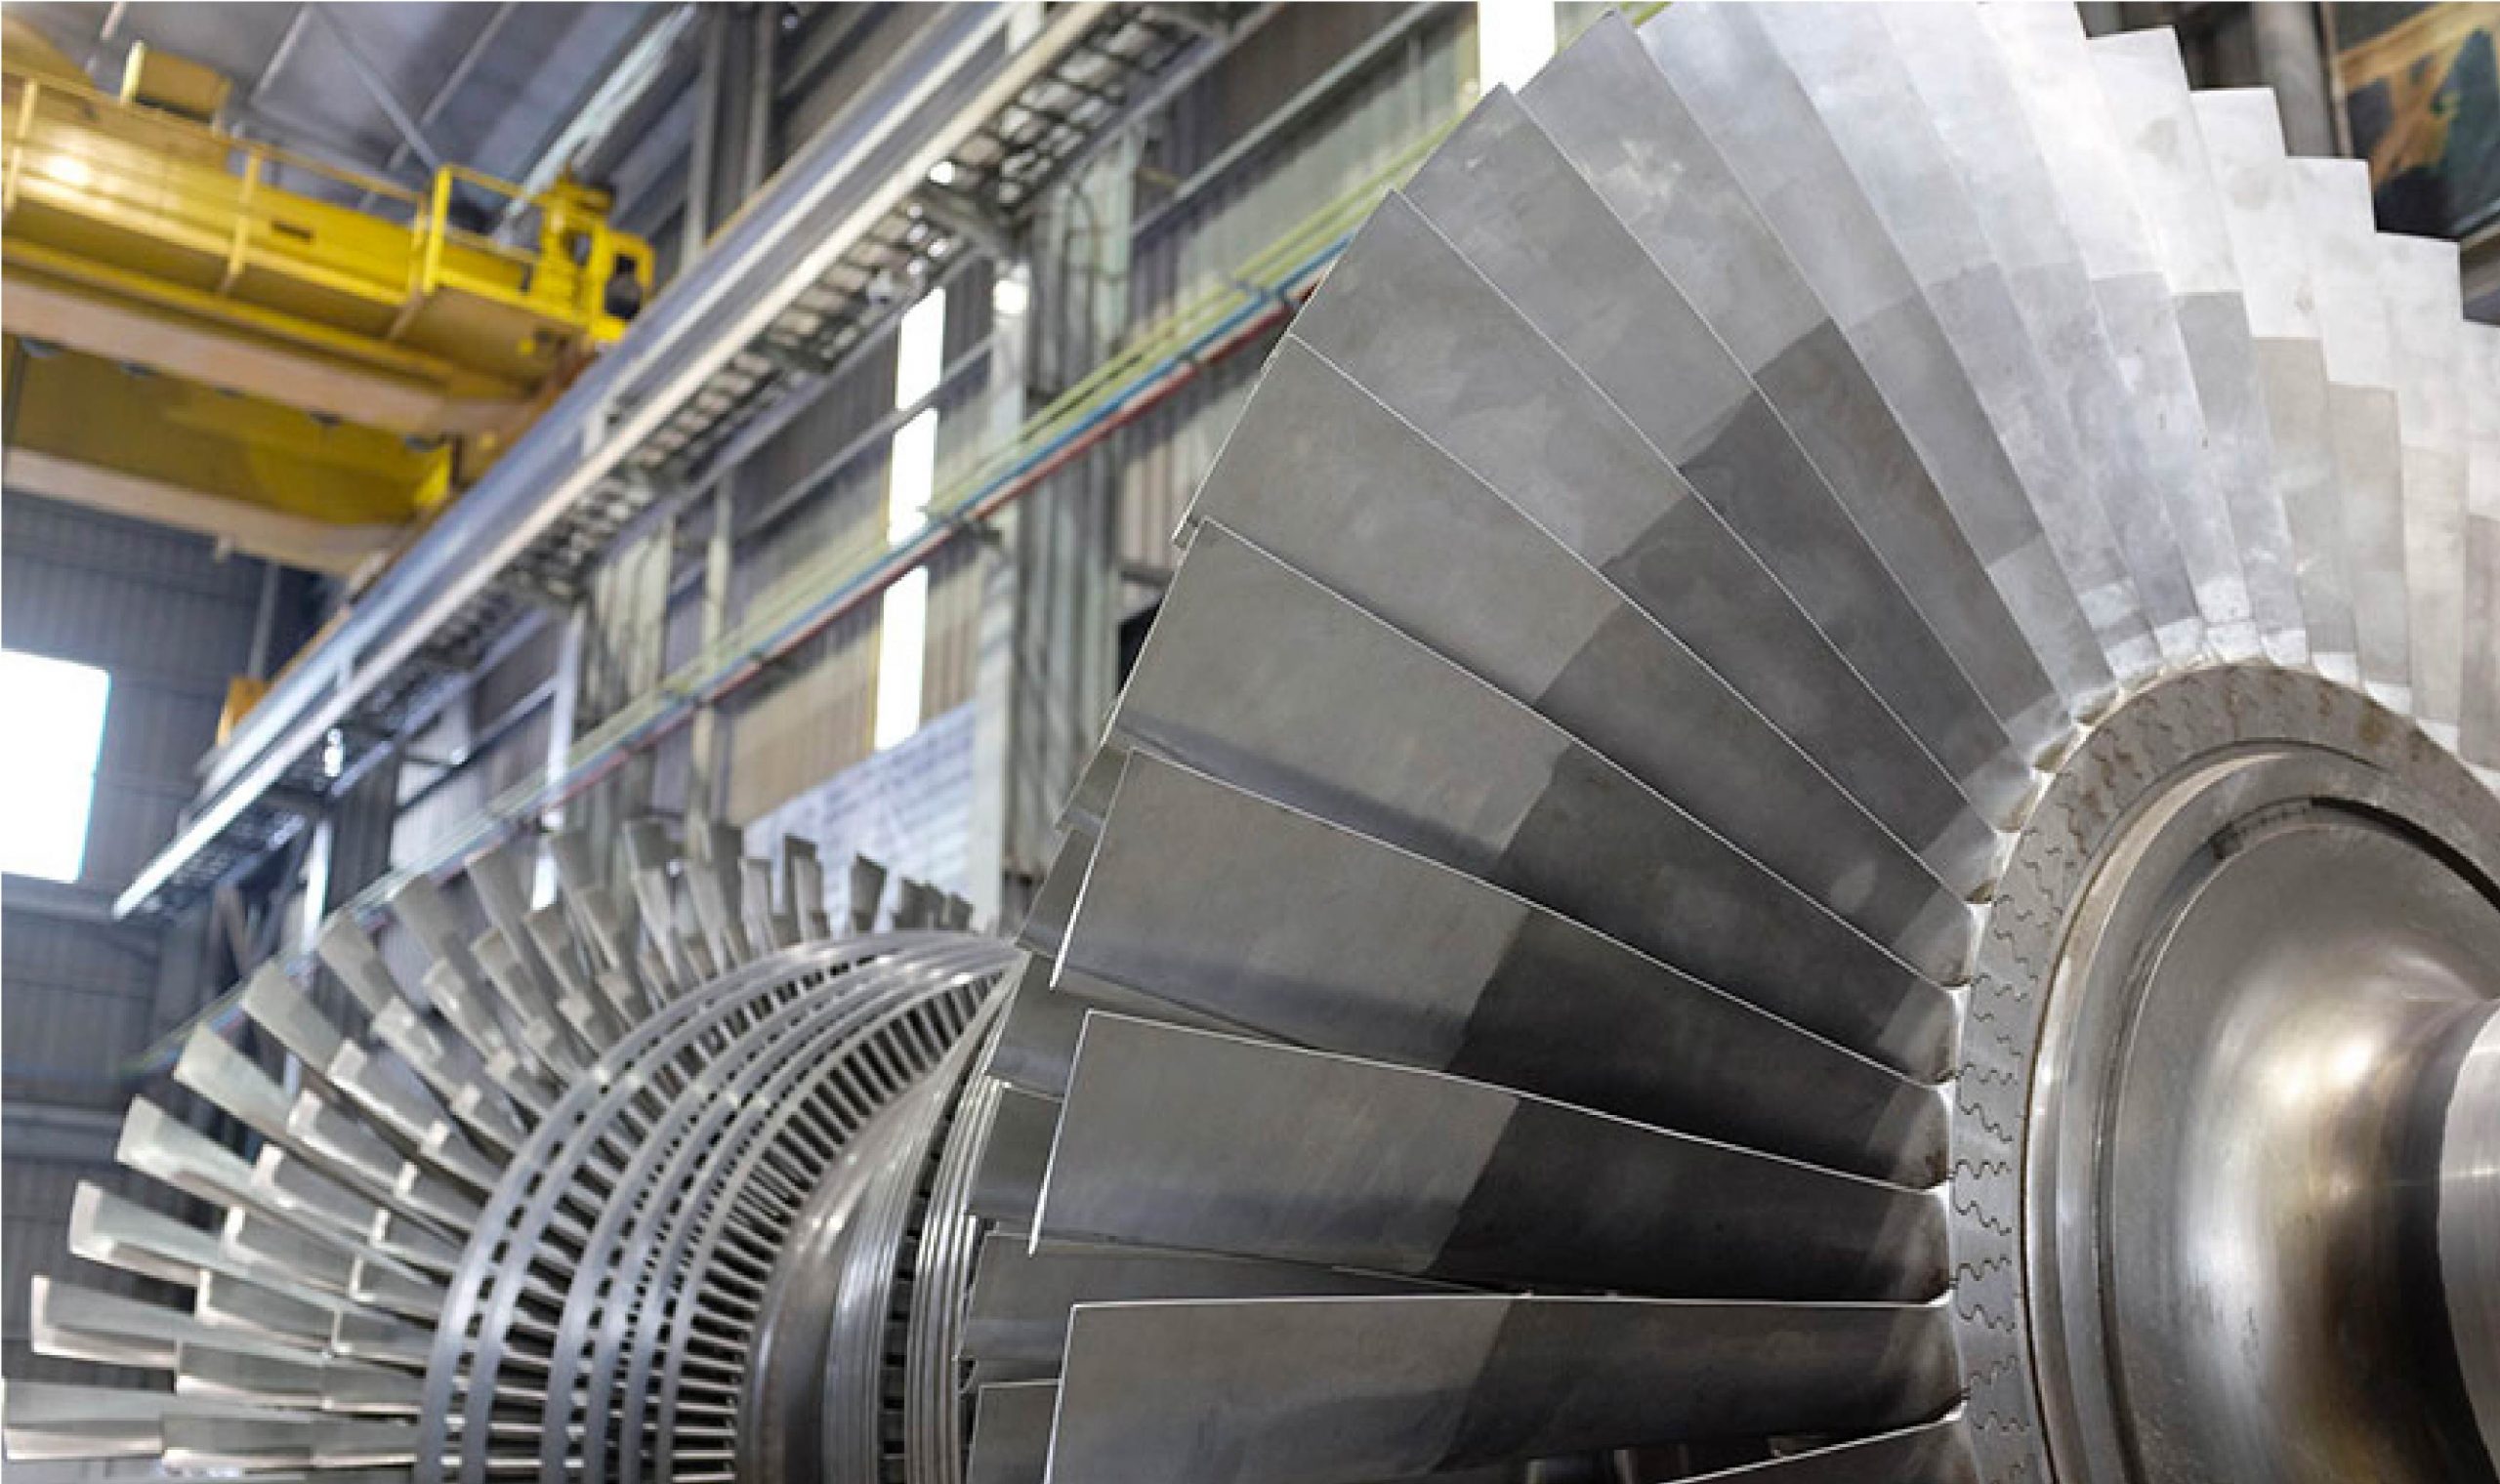 Une turbine industrielle dans une usine, avec assistance technique de Mecadam Assistance.